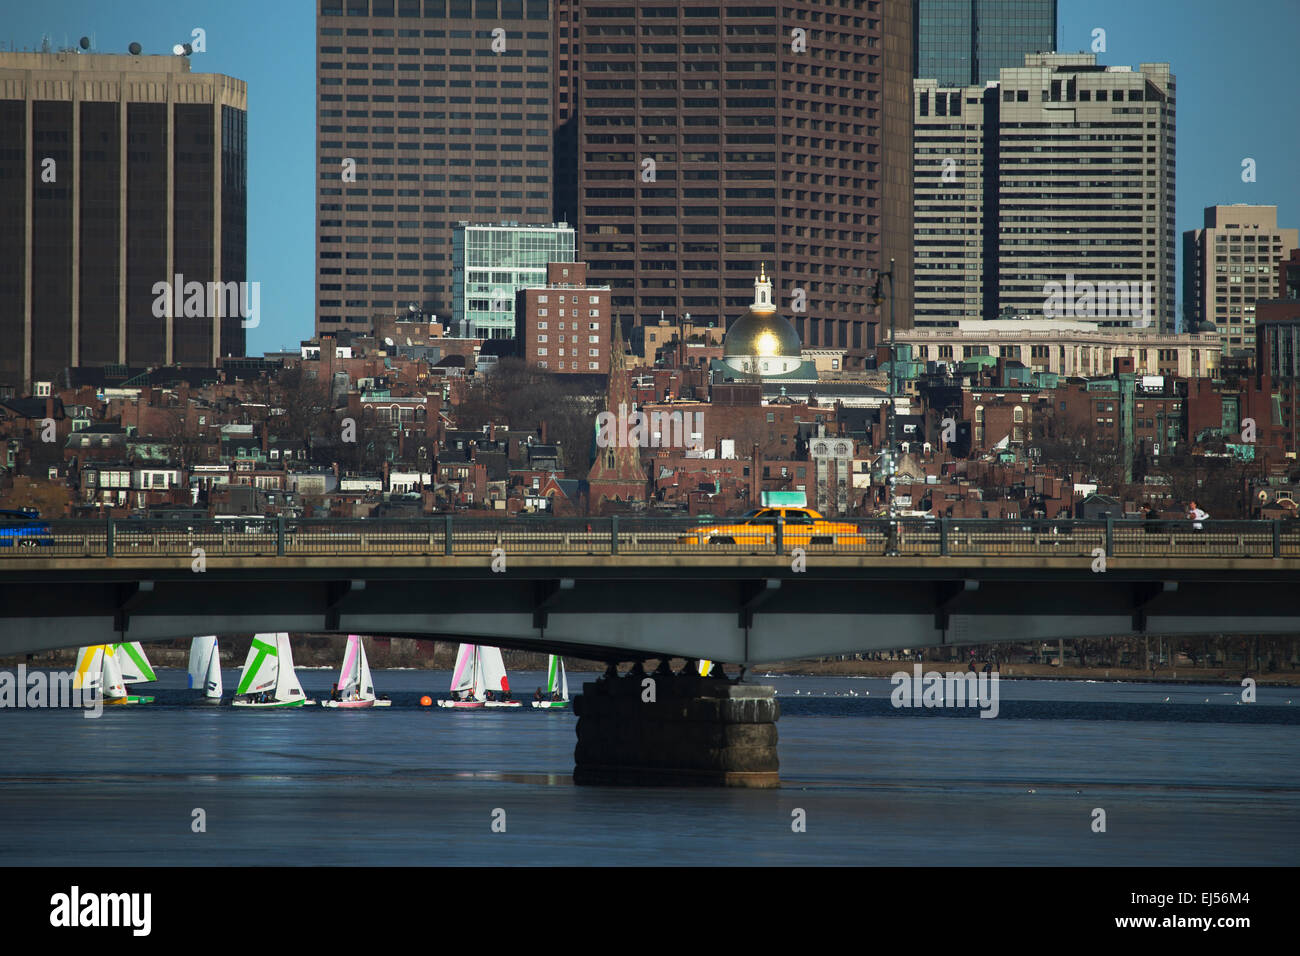 Taxi amarillo unidades en Harvard, puente sobre el río Charles, con coloridos veleros, Boston, Massachusetts, EE.UU. Foto de stock